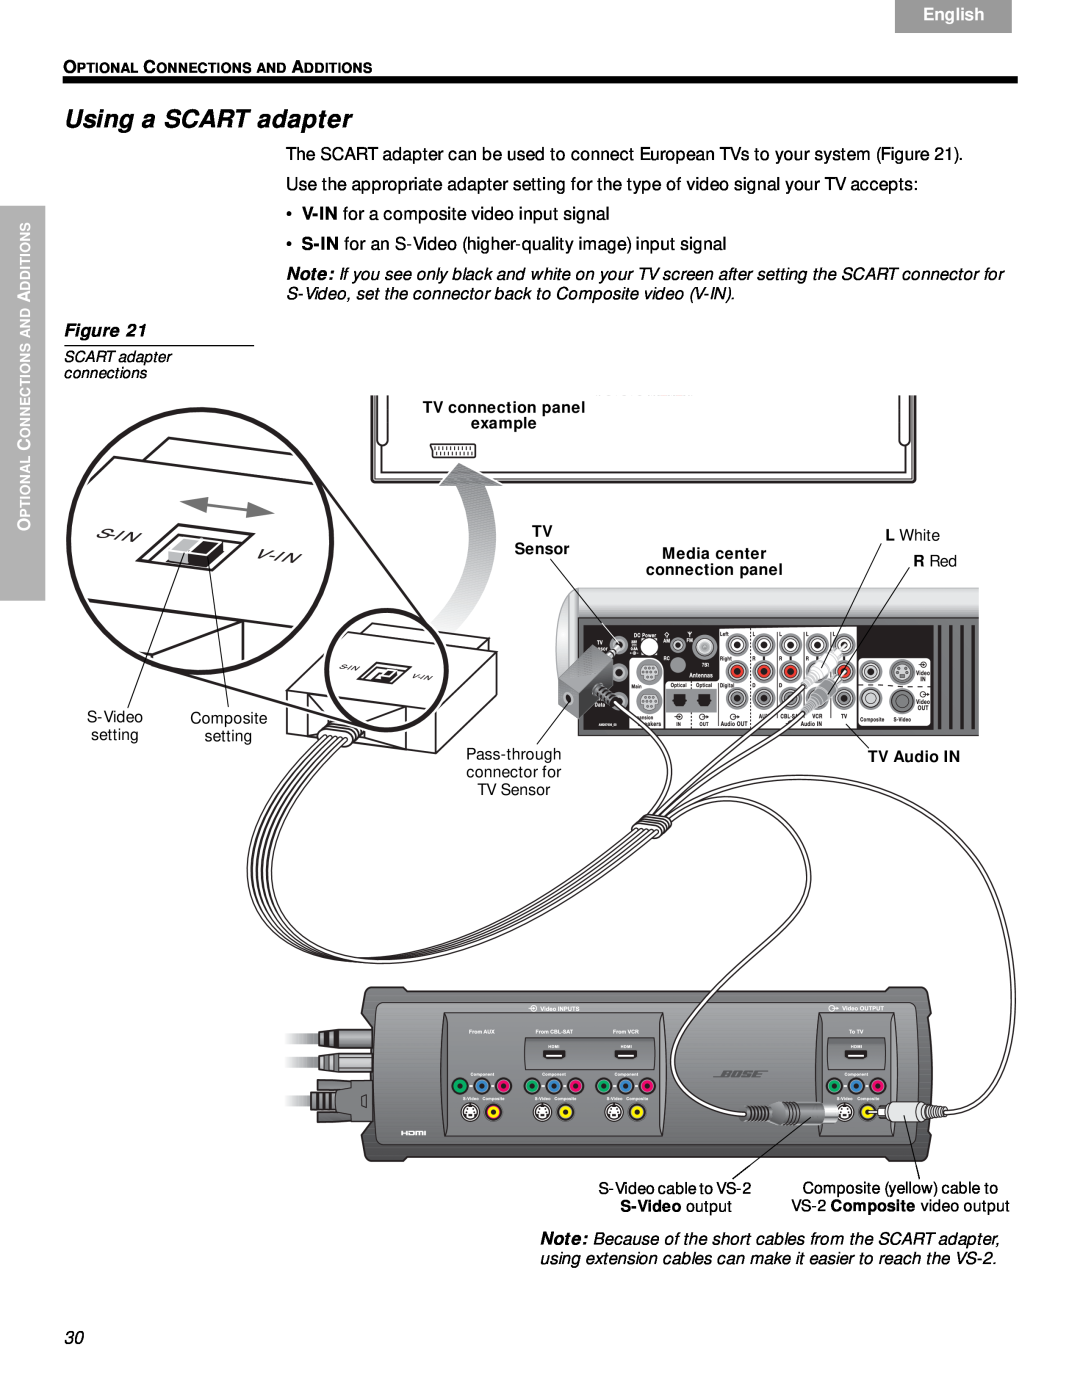 Bose VS-2 manual Using a SCART adapter, Svenska, Nederlands, English 